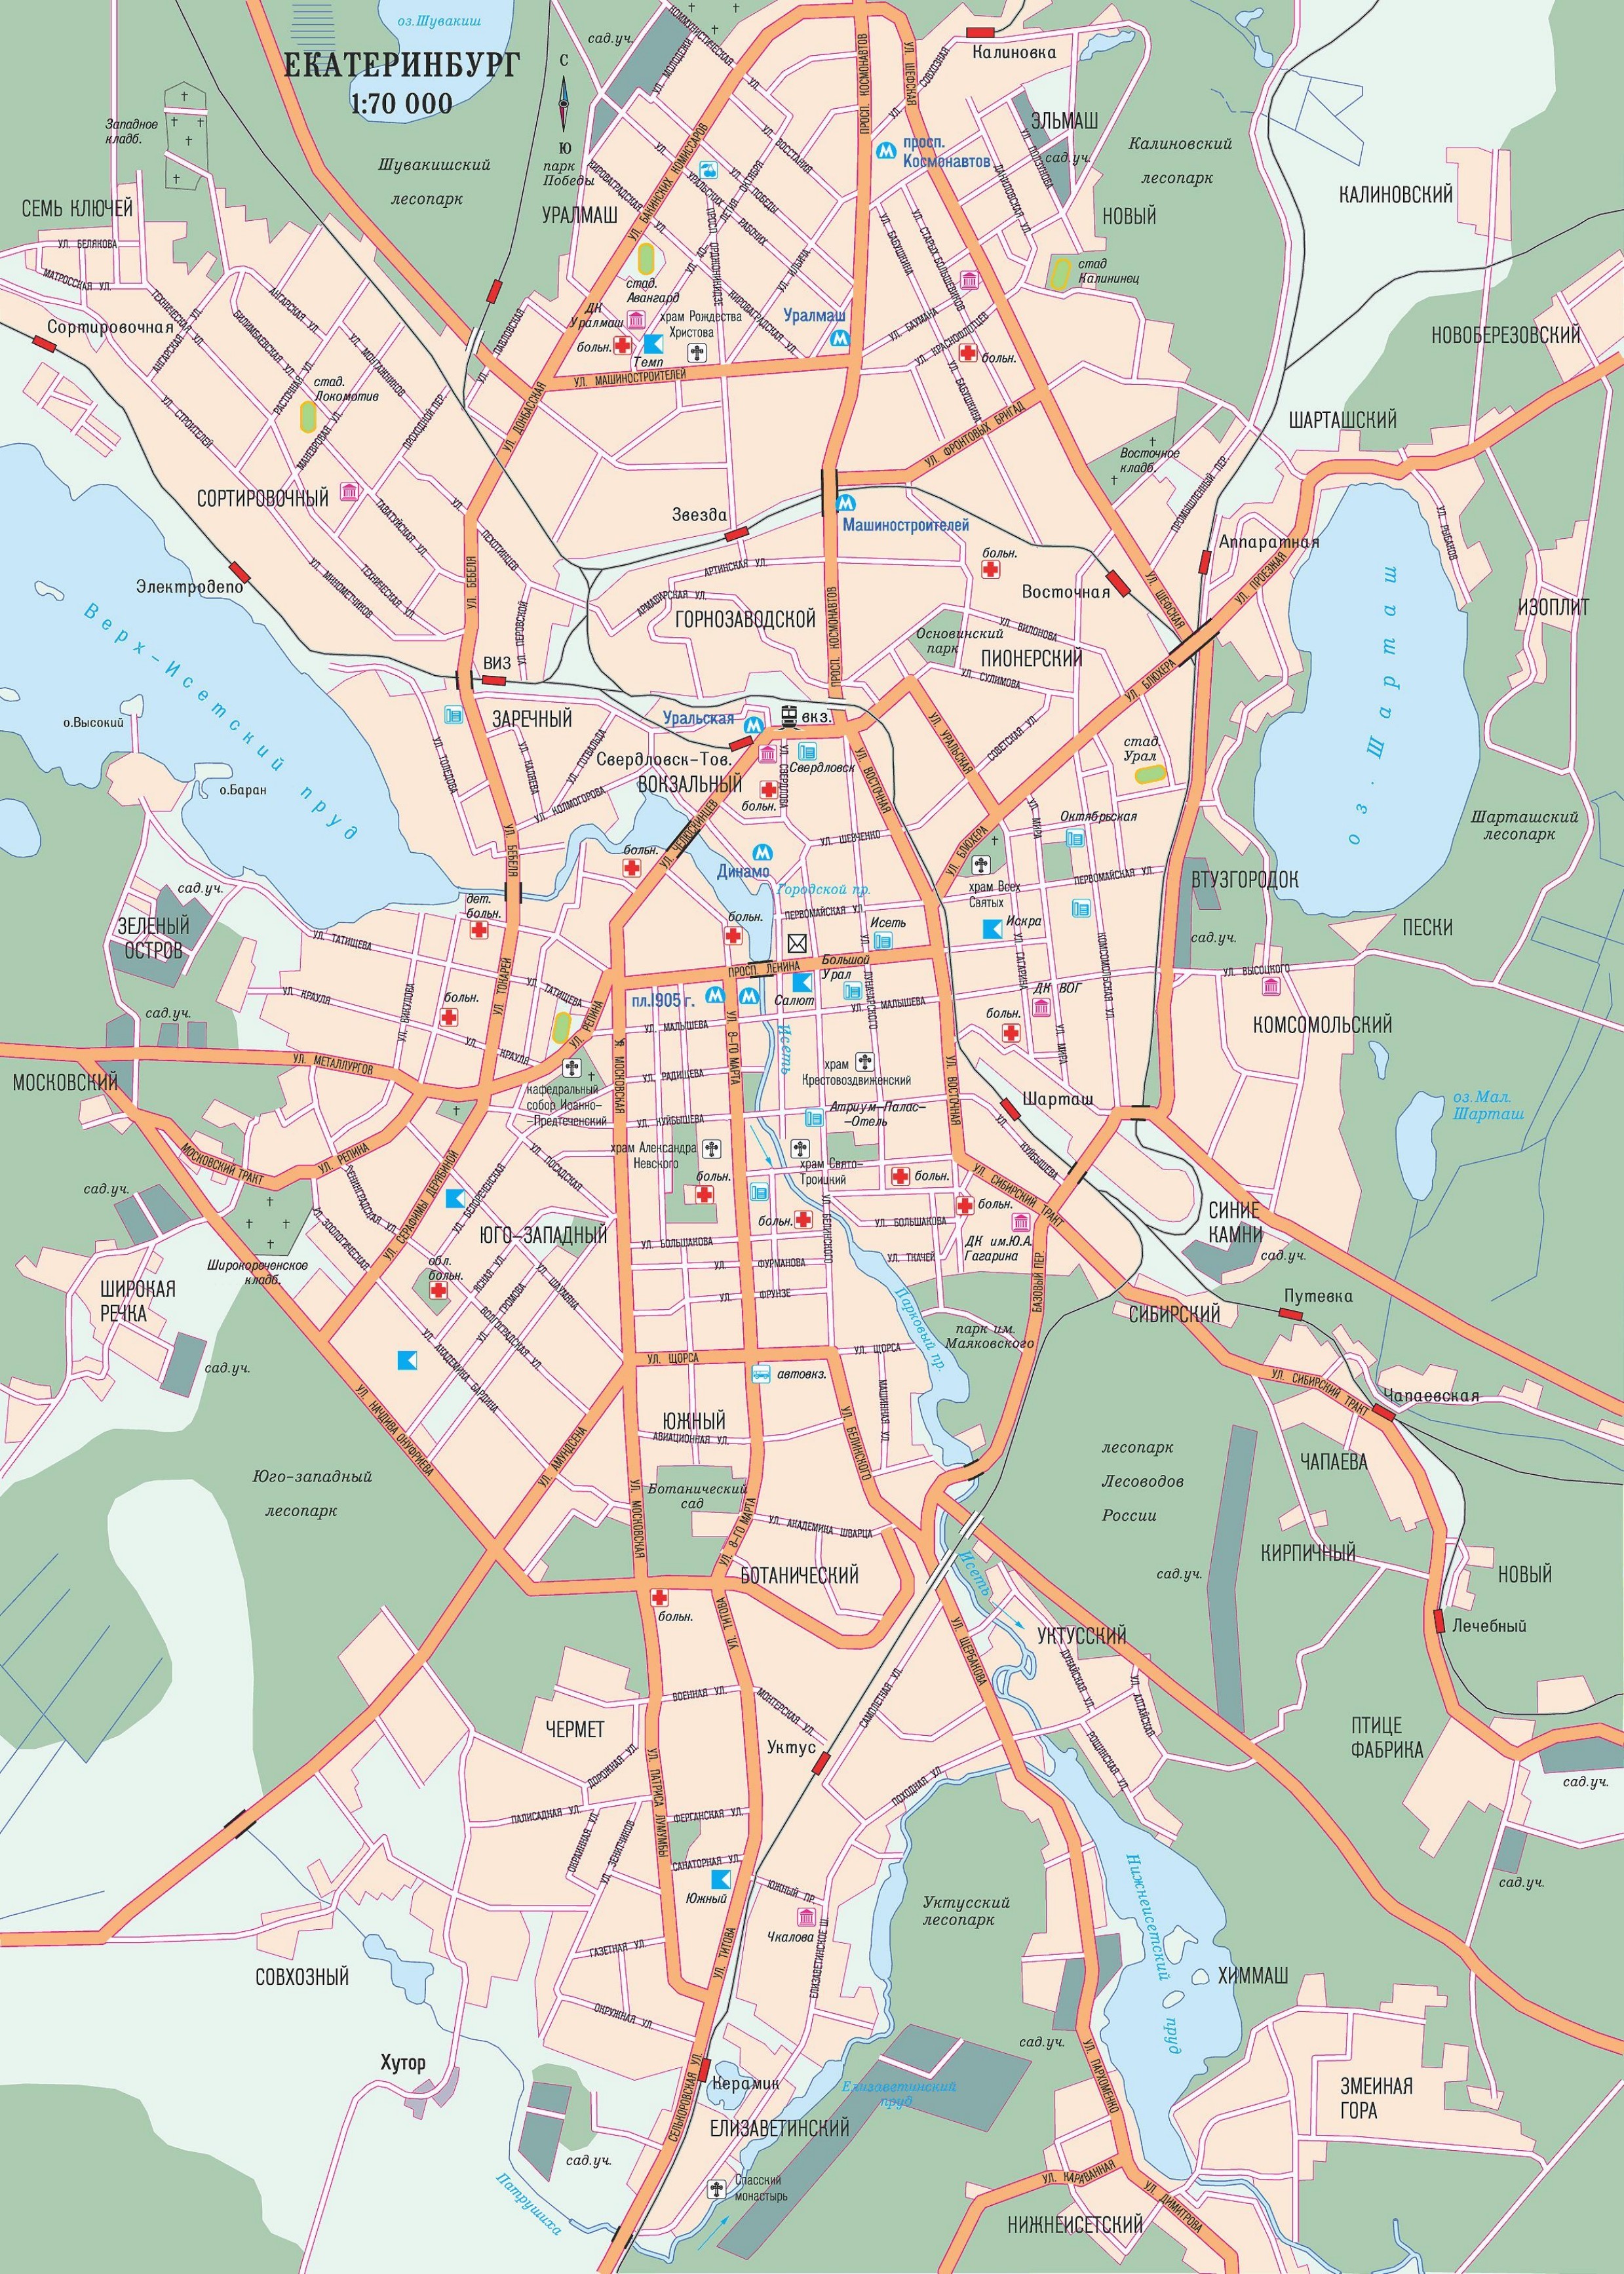 Карта города екатеринбурга с улицами